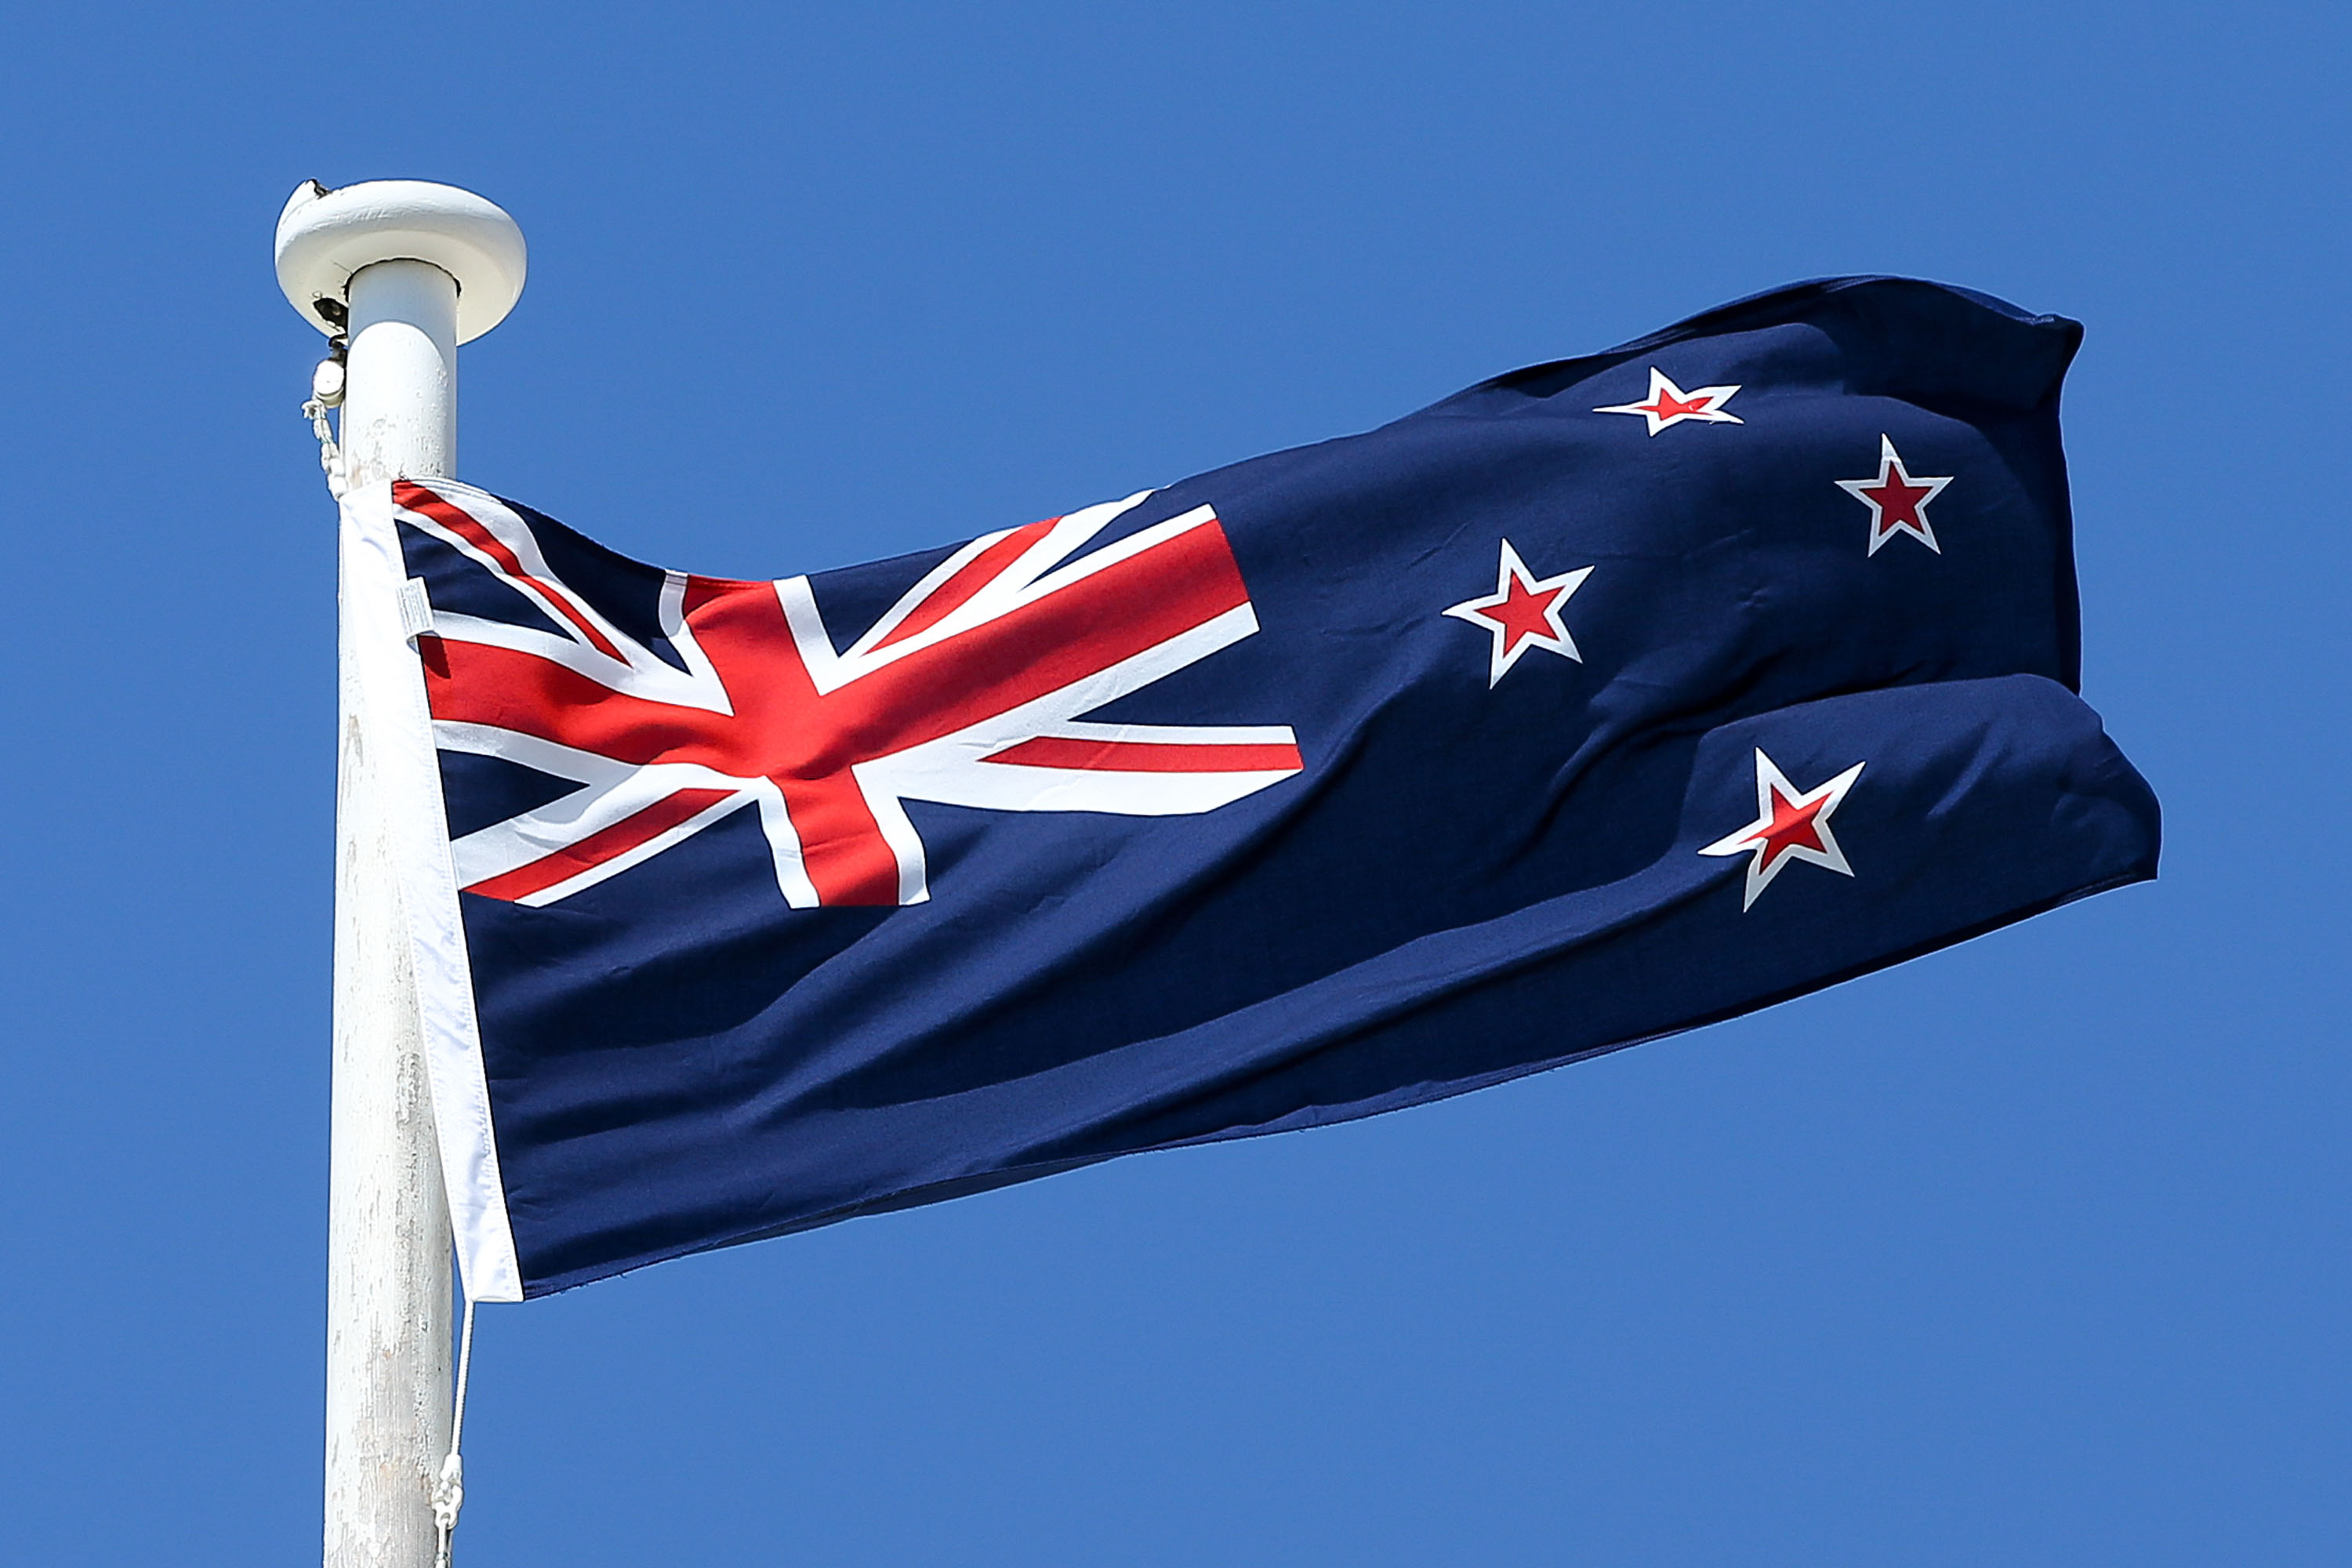 151215130030-old-kiwi-flag.jpg